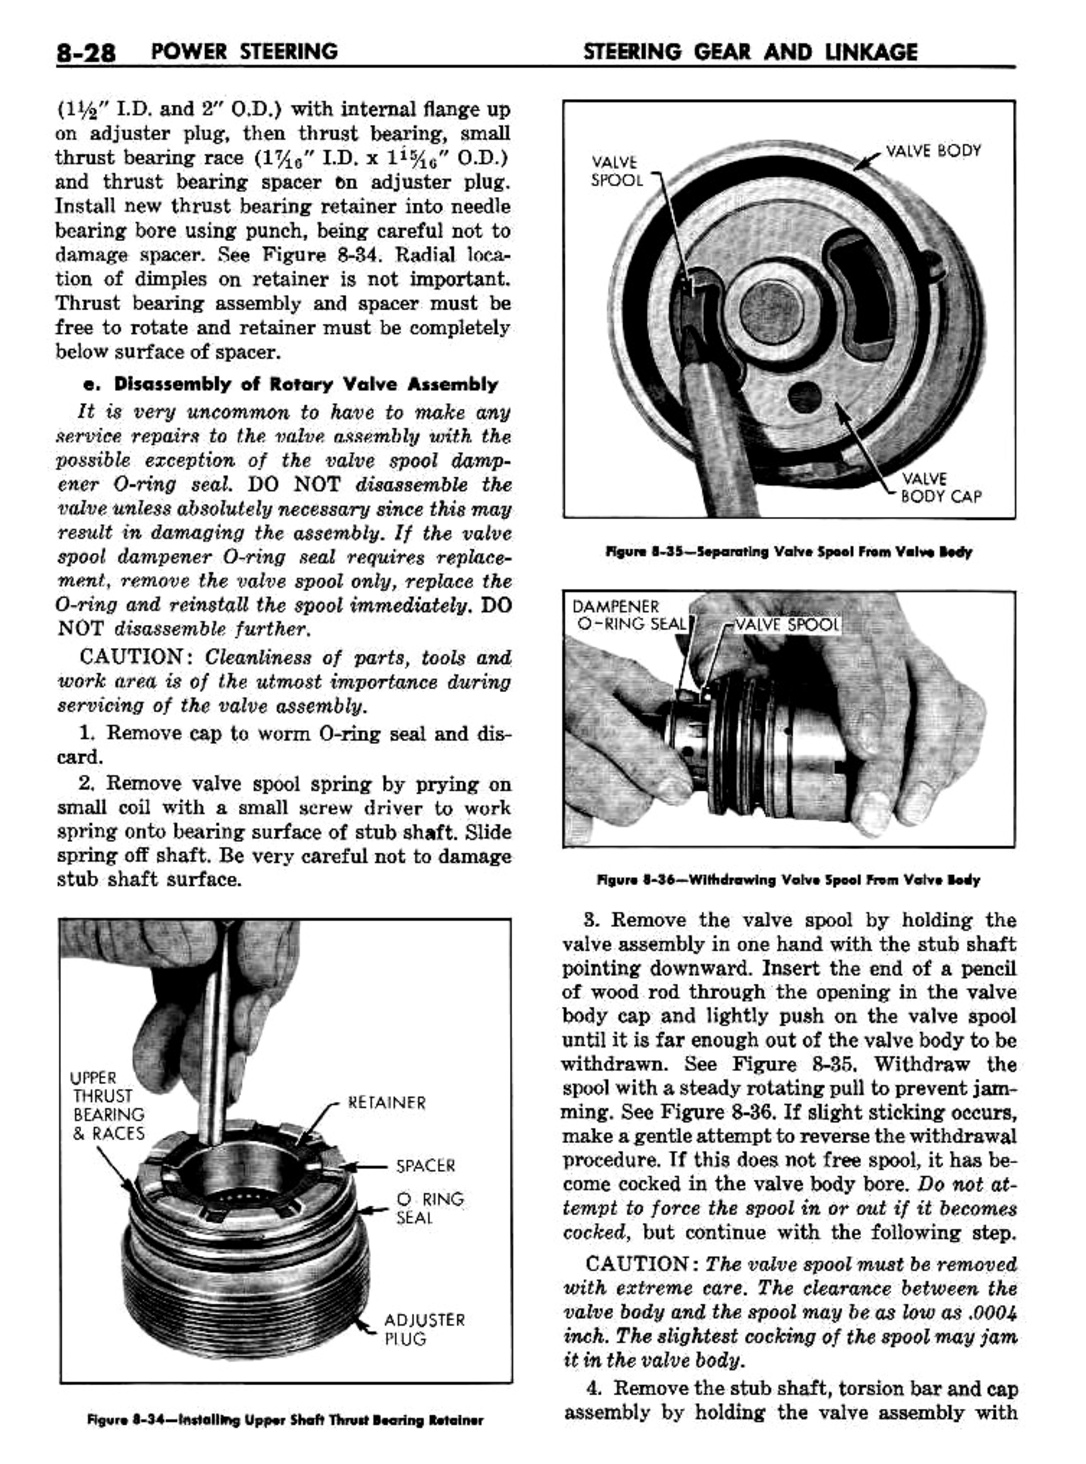 n_09 1960 Buick Shop Manual - Steering-028-028.jpg